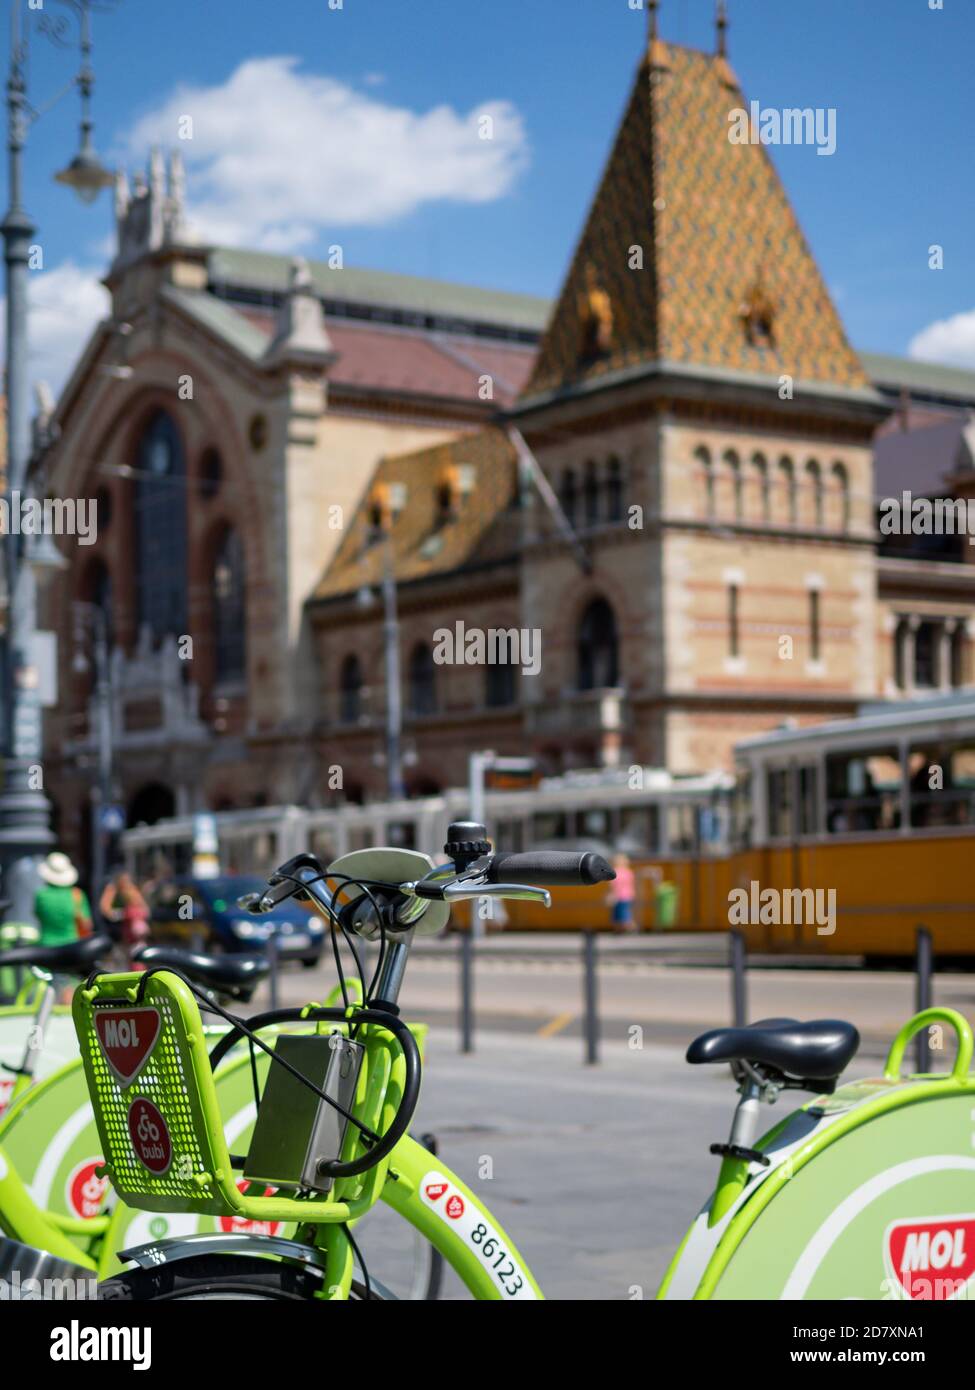 BUDAPEST, HONGRIE - 16 JUILLET 2019 : station de partage de vélos Bubi avec vue imprenable sur le bâtiment du Grand Market Hall en arrière-plan Banque D'Images